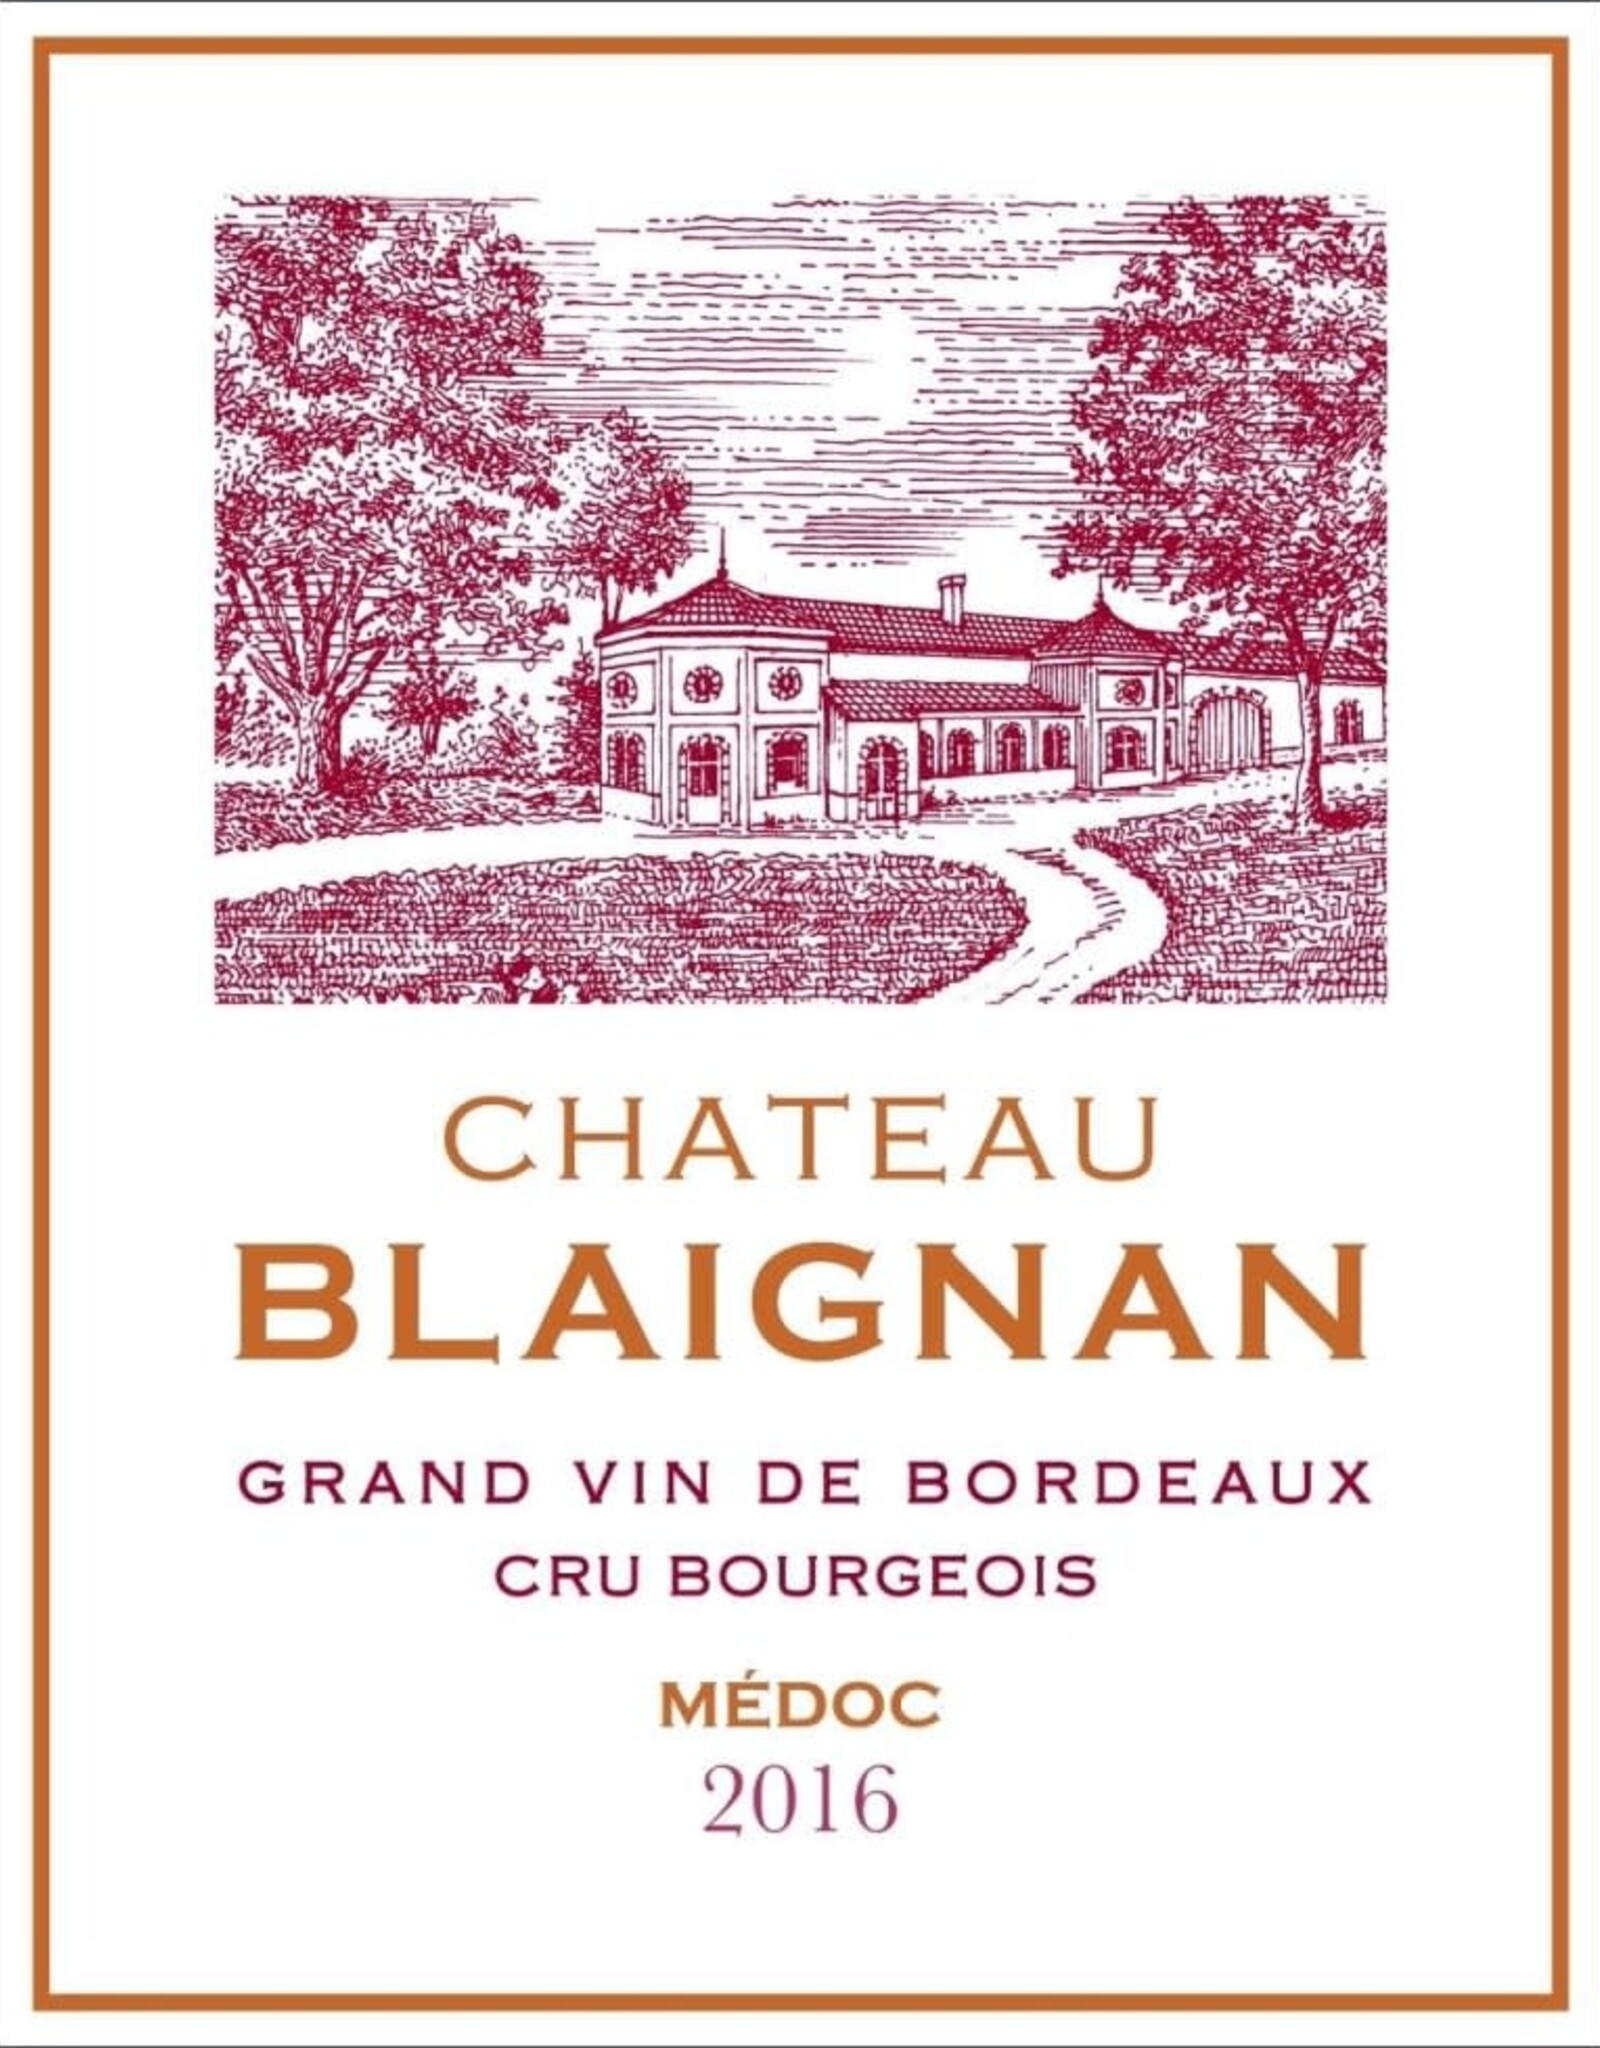 Chateau Blaignan Chateau Blaignan, Medoc Cru Bourgeois 2016